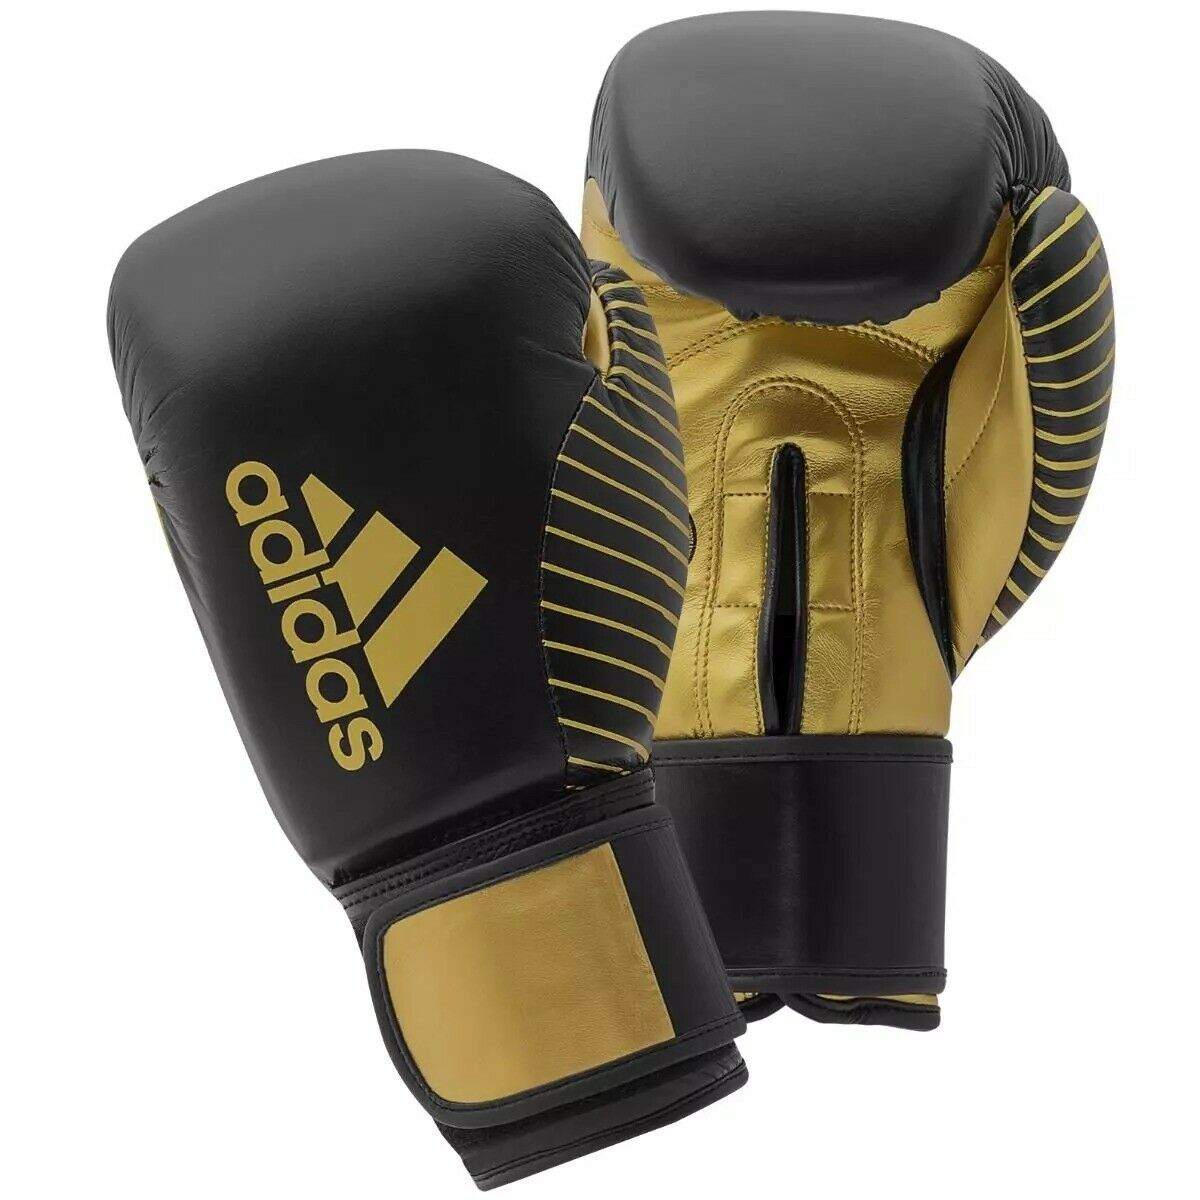 adidas Kickboxing Gloves Leather Boxing 10 oz - Budo Online